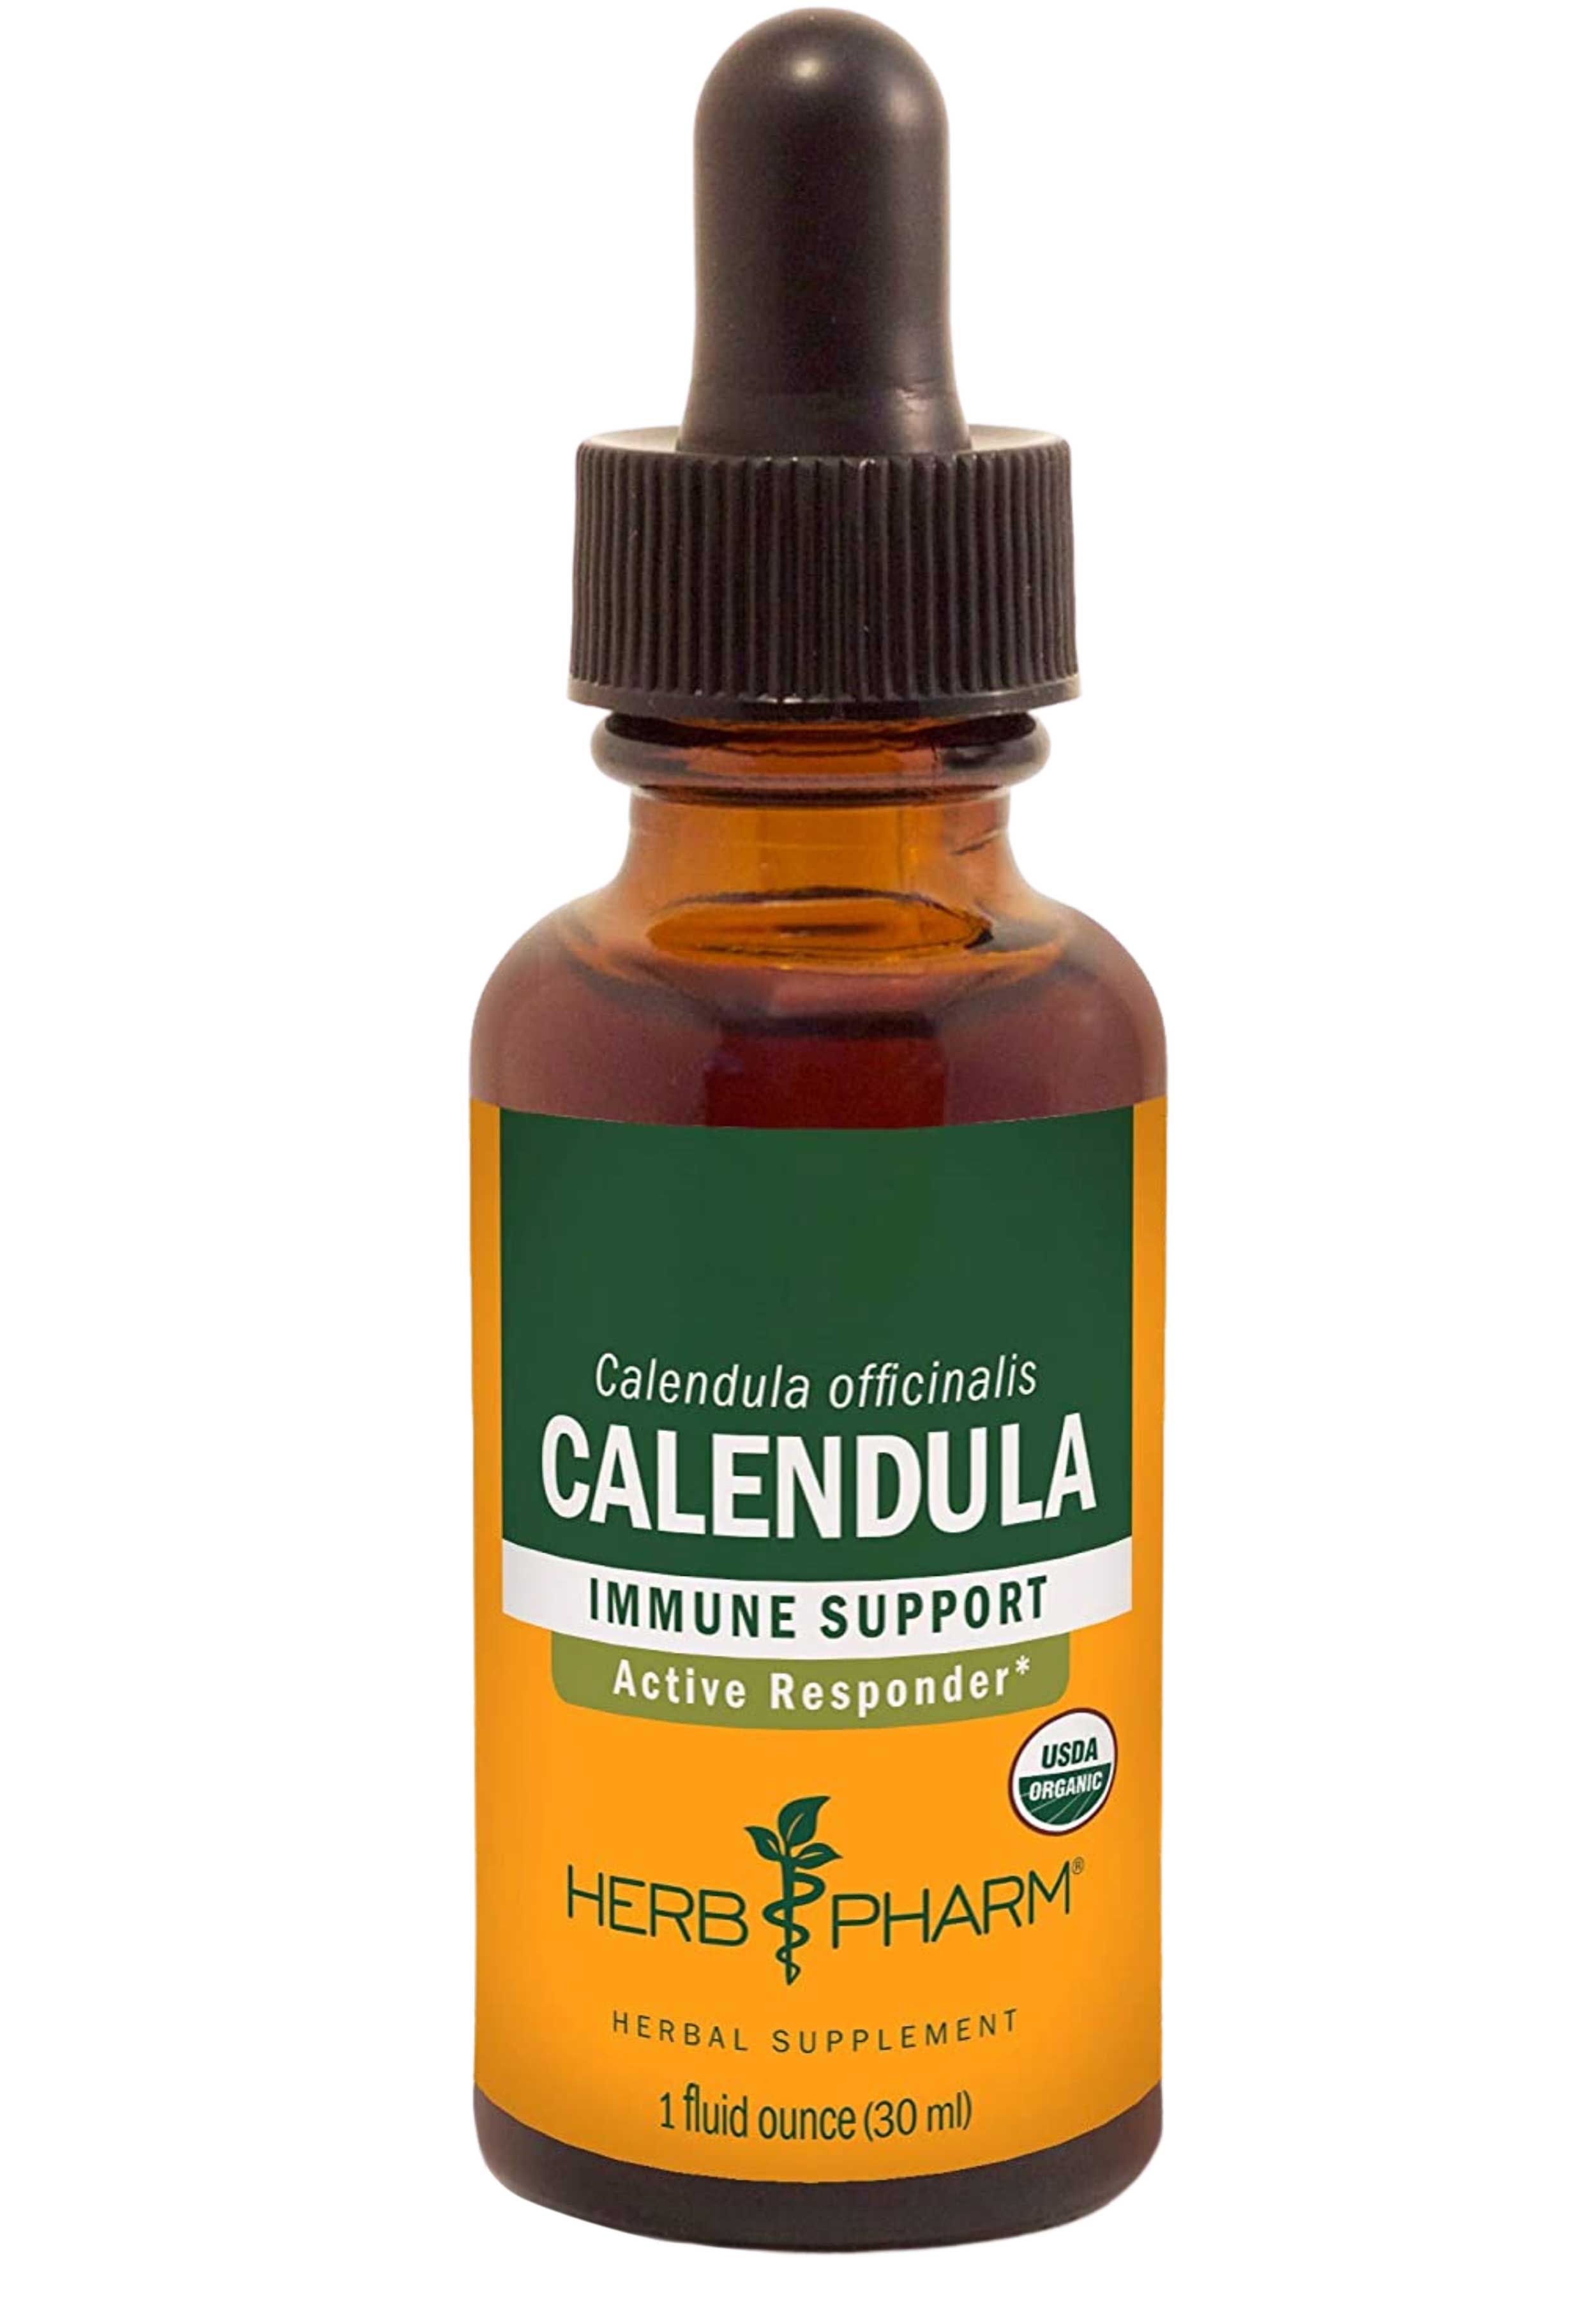 Herb Pharm Calendula Immune Support